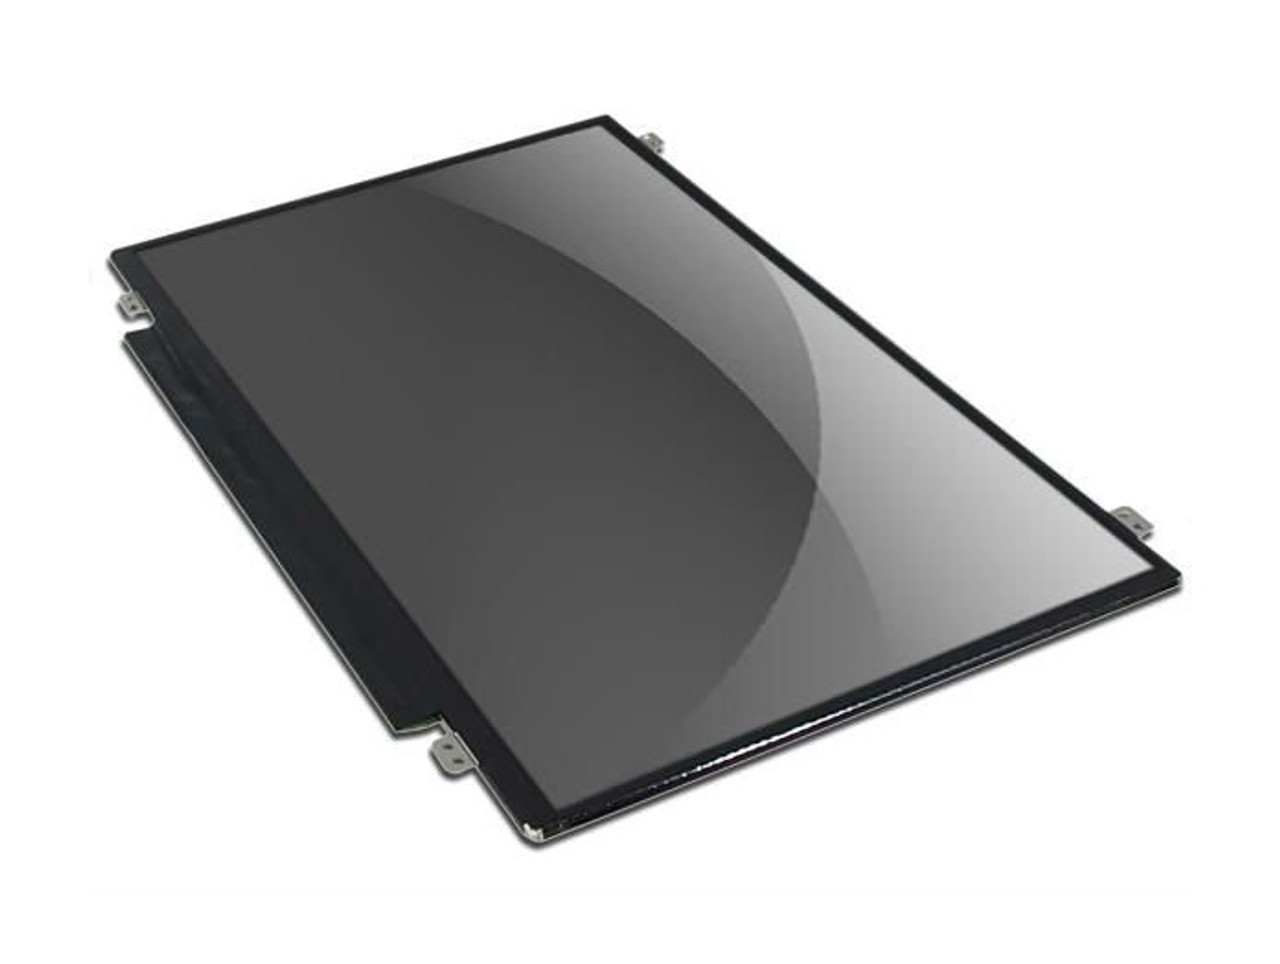 PDJJH - Dell 15.6-inch FHD LED LCD Screen Latitude E5550